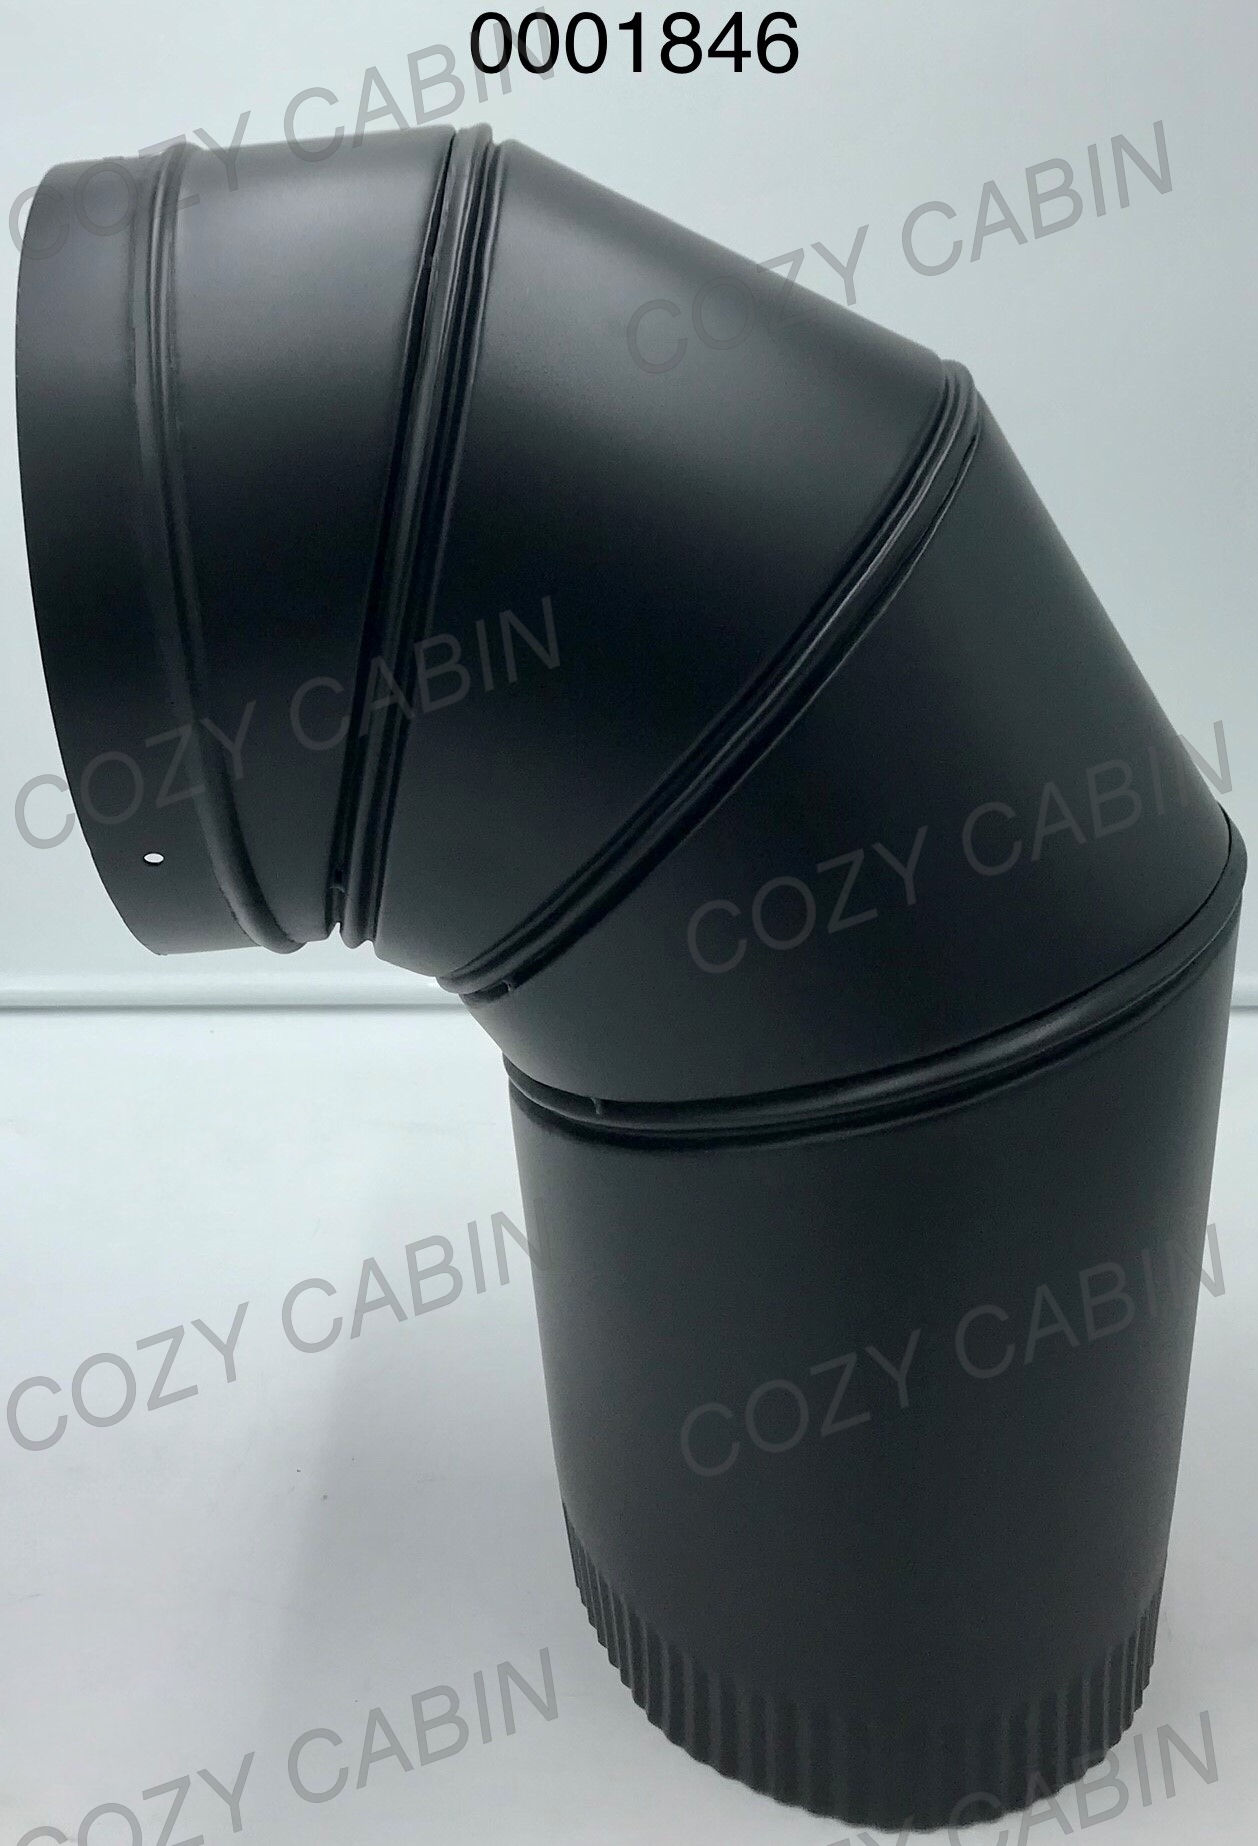 Cozy Cabin Stove & Fireplace Shop - Cast Iron Steamer - Bordeaux Enamel  0000793